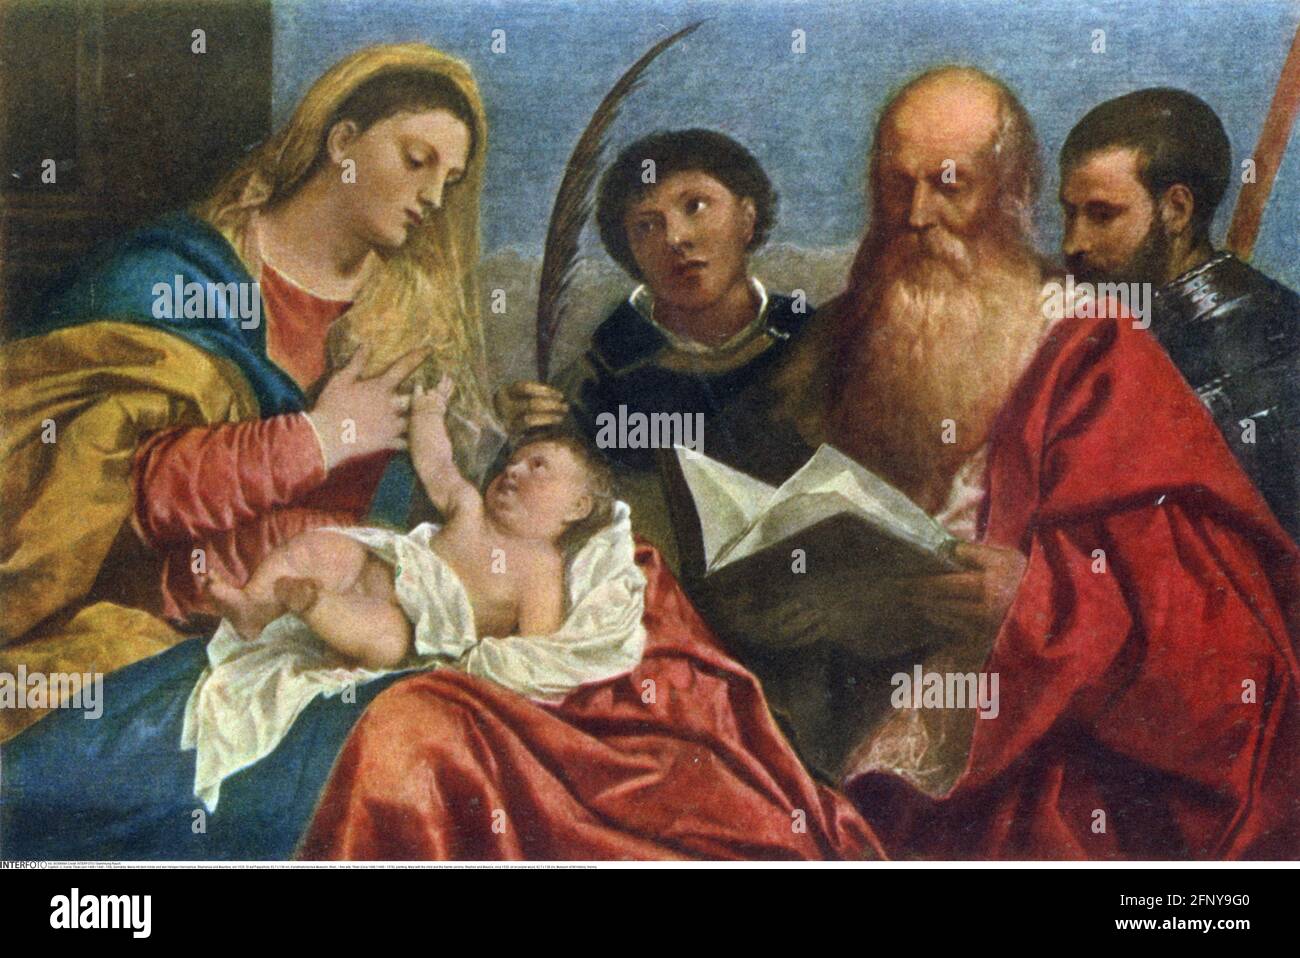 Bellas artes, Tiziano (circa 1488 / 1490 - 1576), pintura, María con el niño y los Santos Jerónimo, LOS DERECHOS DE AUTOR DEL ARTISTA NO TIENEN QUE SER ACLARADOS Foto de stock